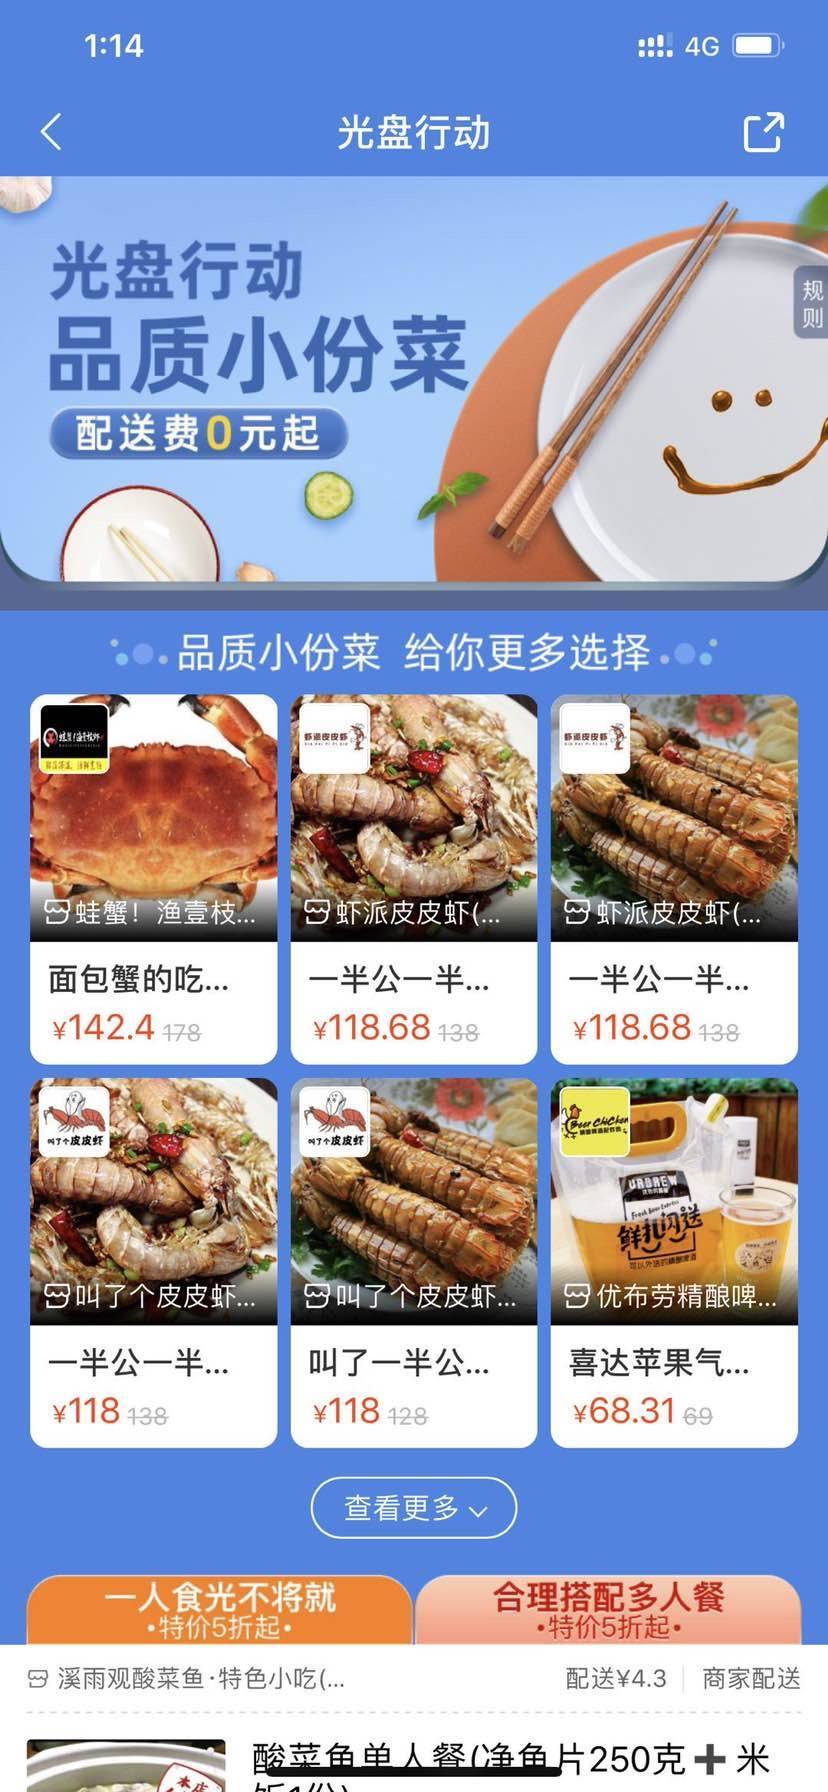 全国60万商户已上线小份餐，上海人是“最爱点小份菜”第一名